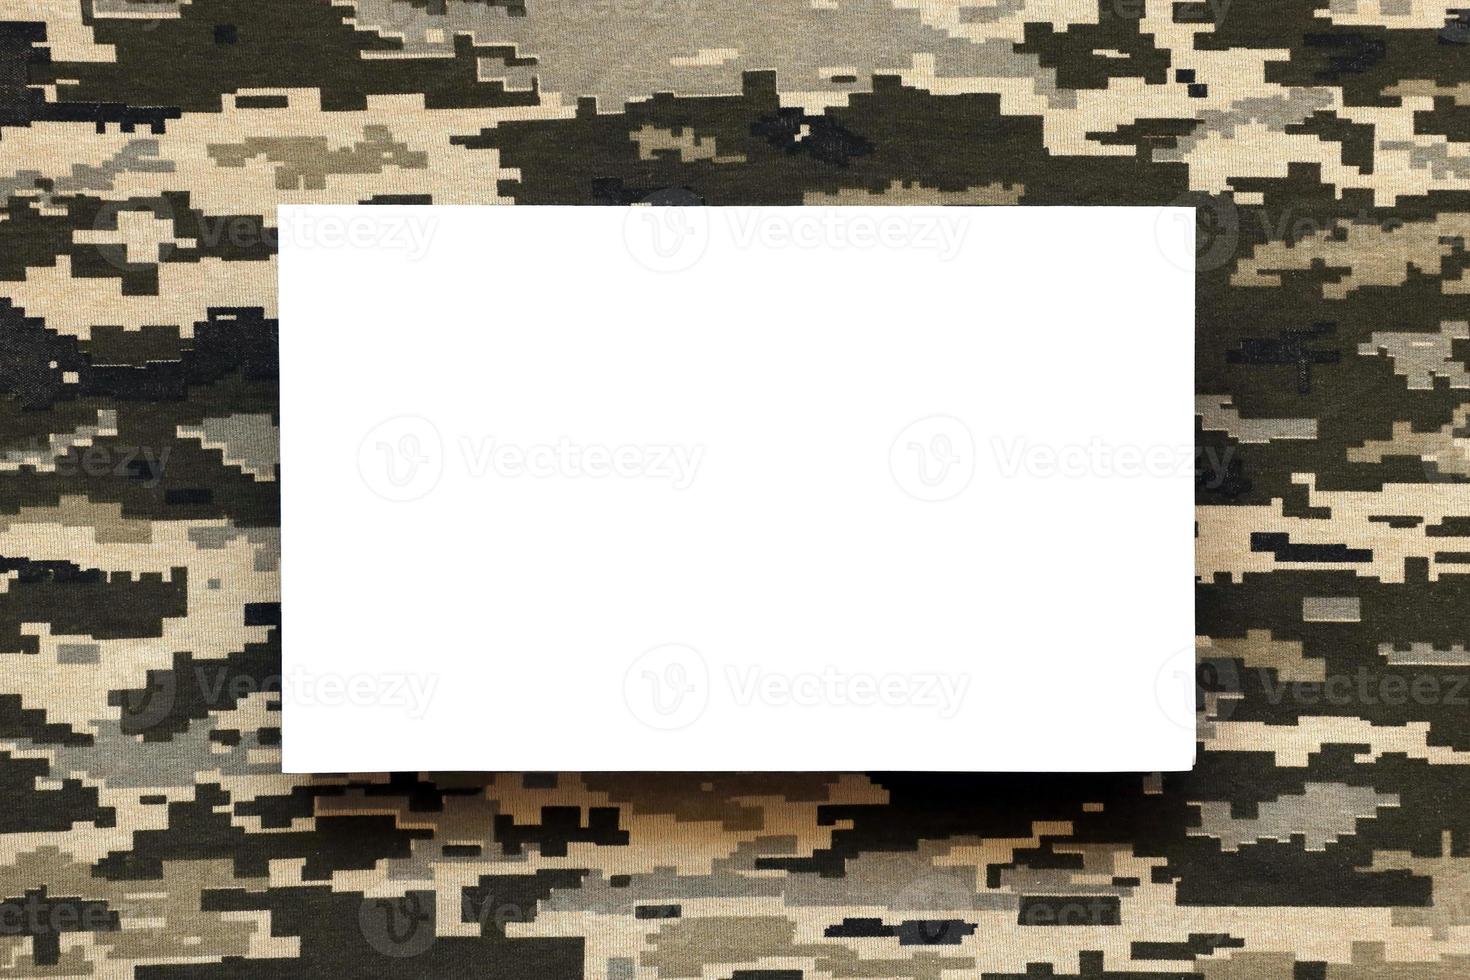 stoff mit textur der ukrainischen militärpixeltarnung und weißem leerem papier. Stoff mit Tarnmuster in grauen, braunen und grünen Pixelformen. foto